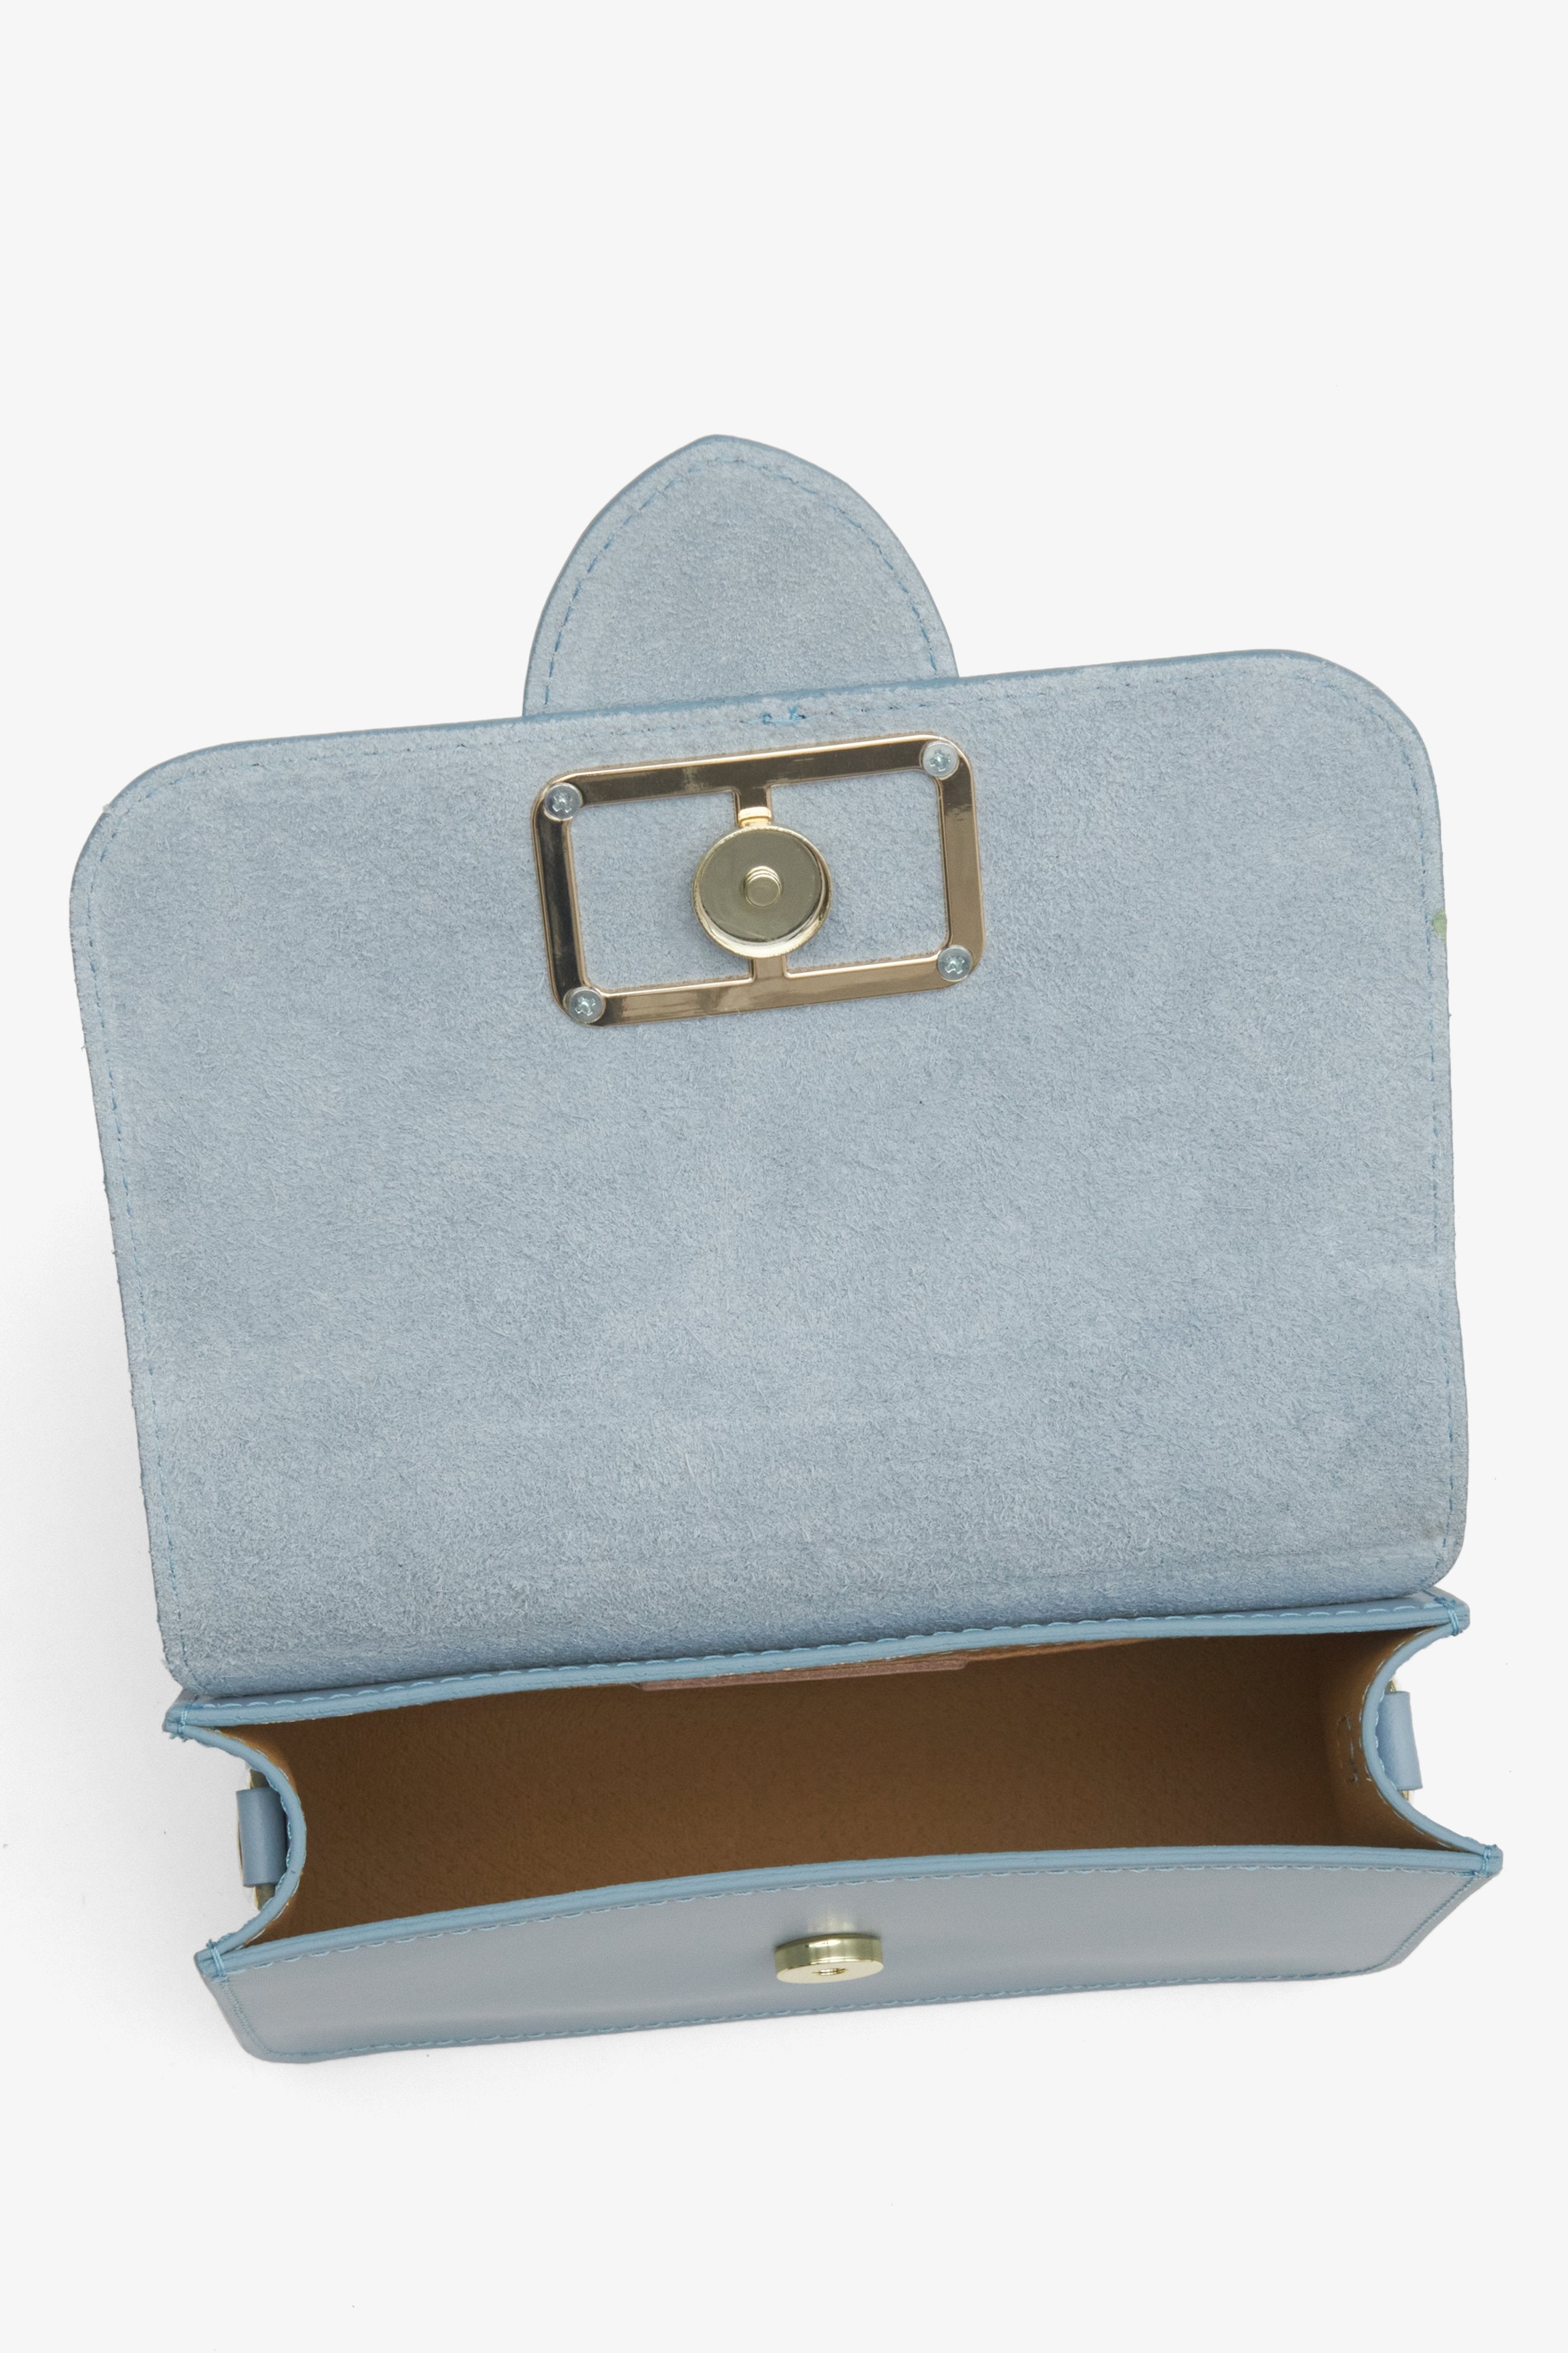 Skórzana, niebieska mała torebka damska Estro - zbliżenie na wnętrze modelu.